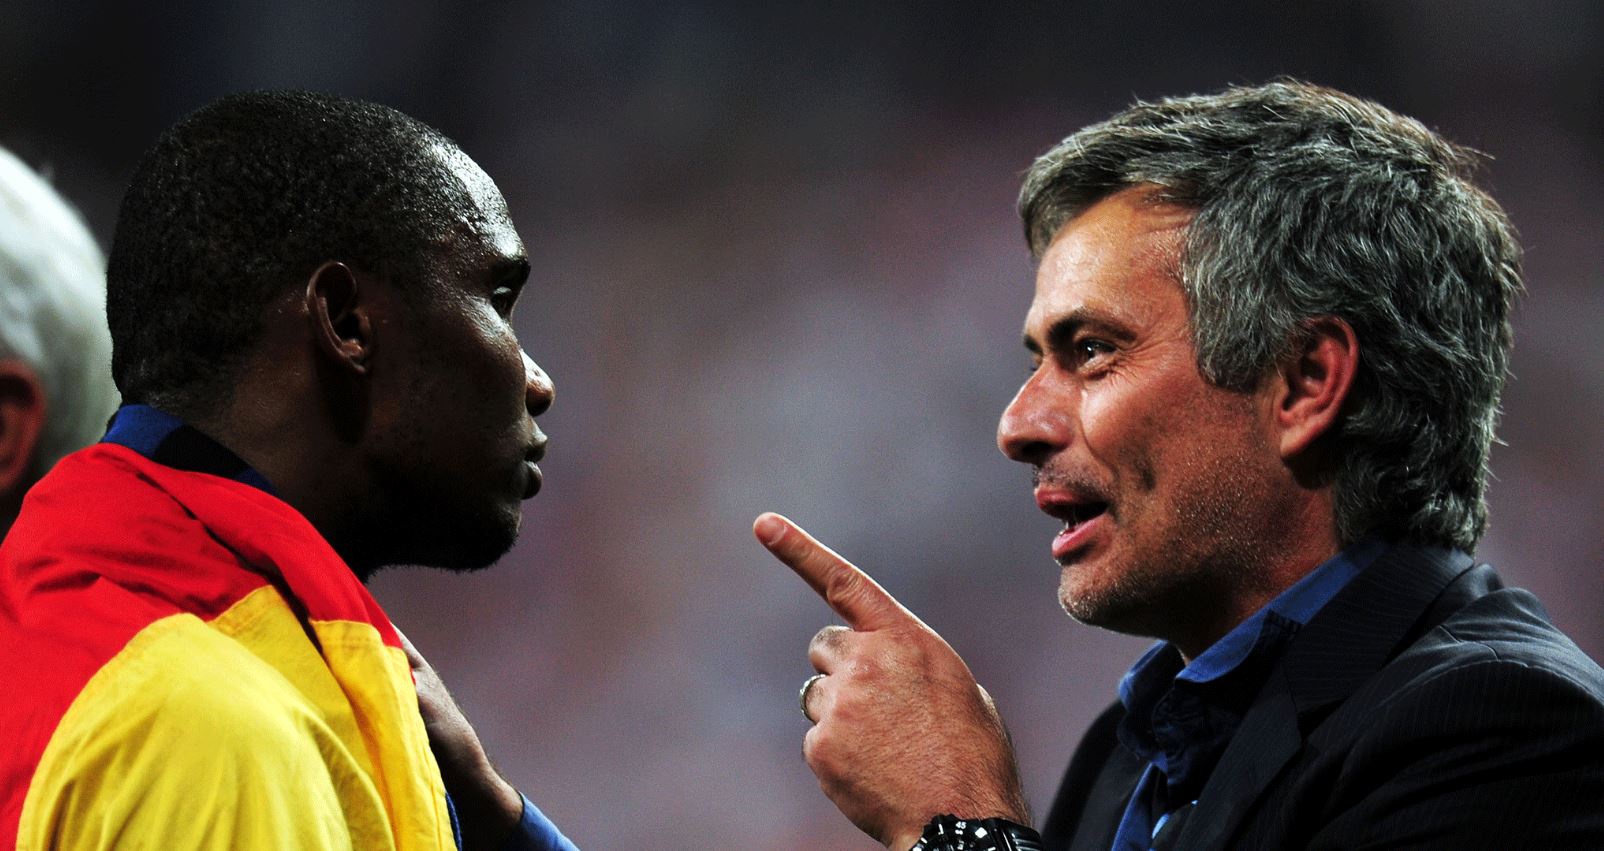 Nouvel entraîneur de Tottenham, le message fort de Samuel Eto’o à Jose Mourinho